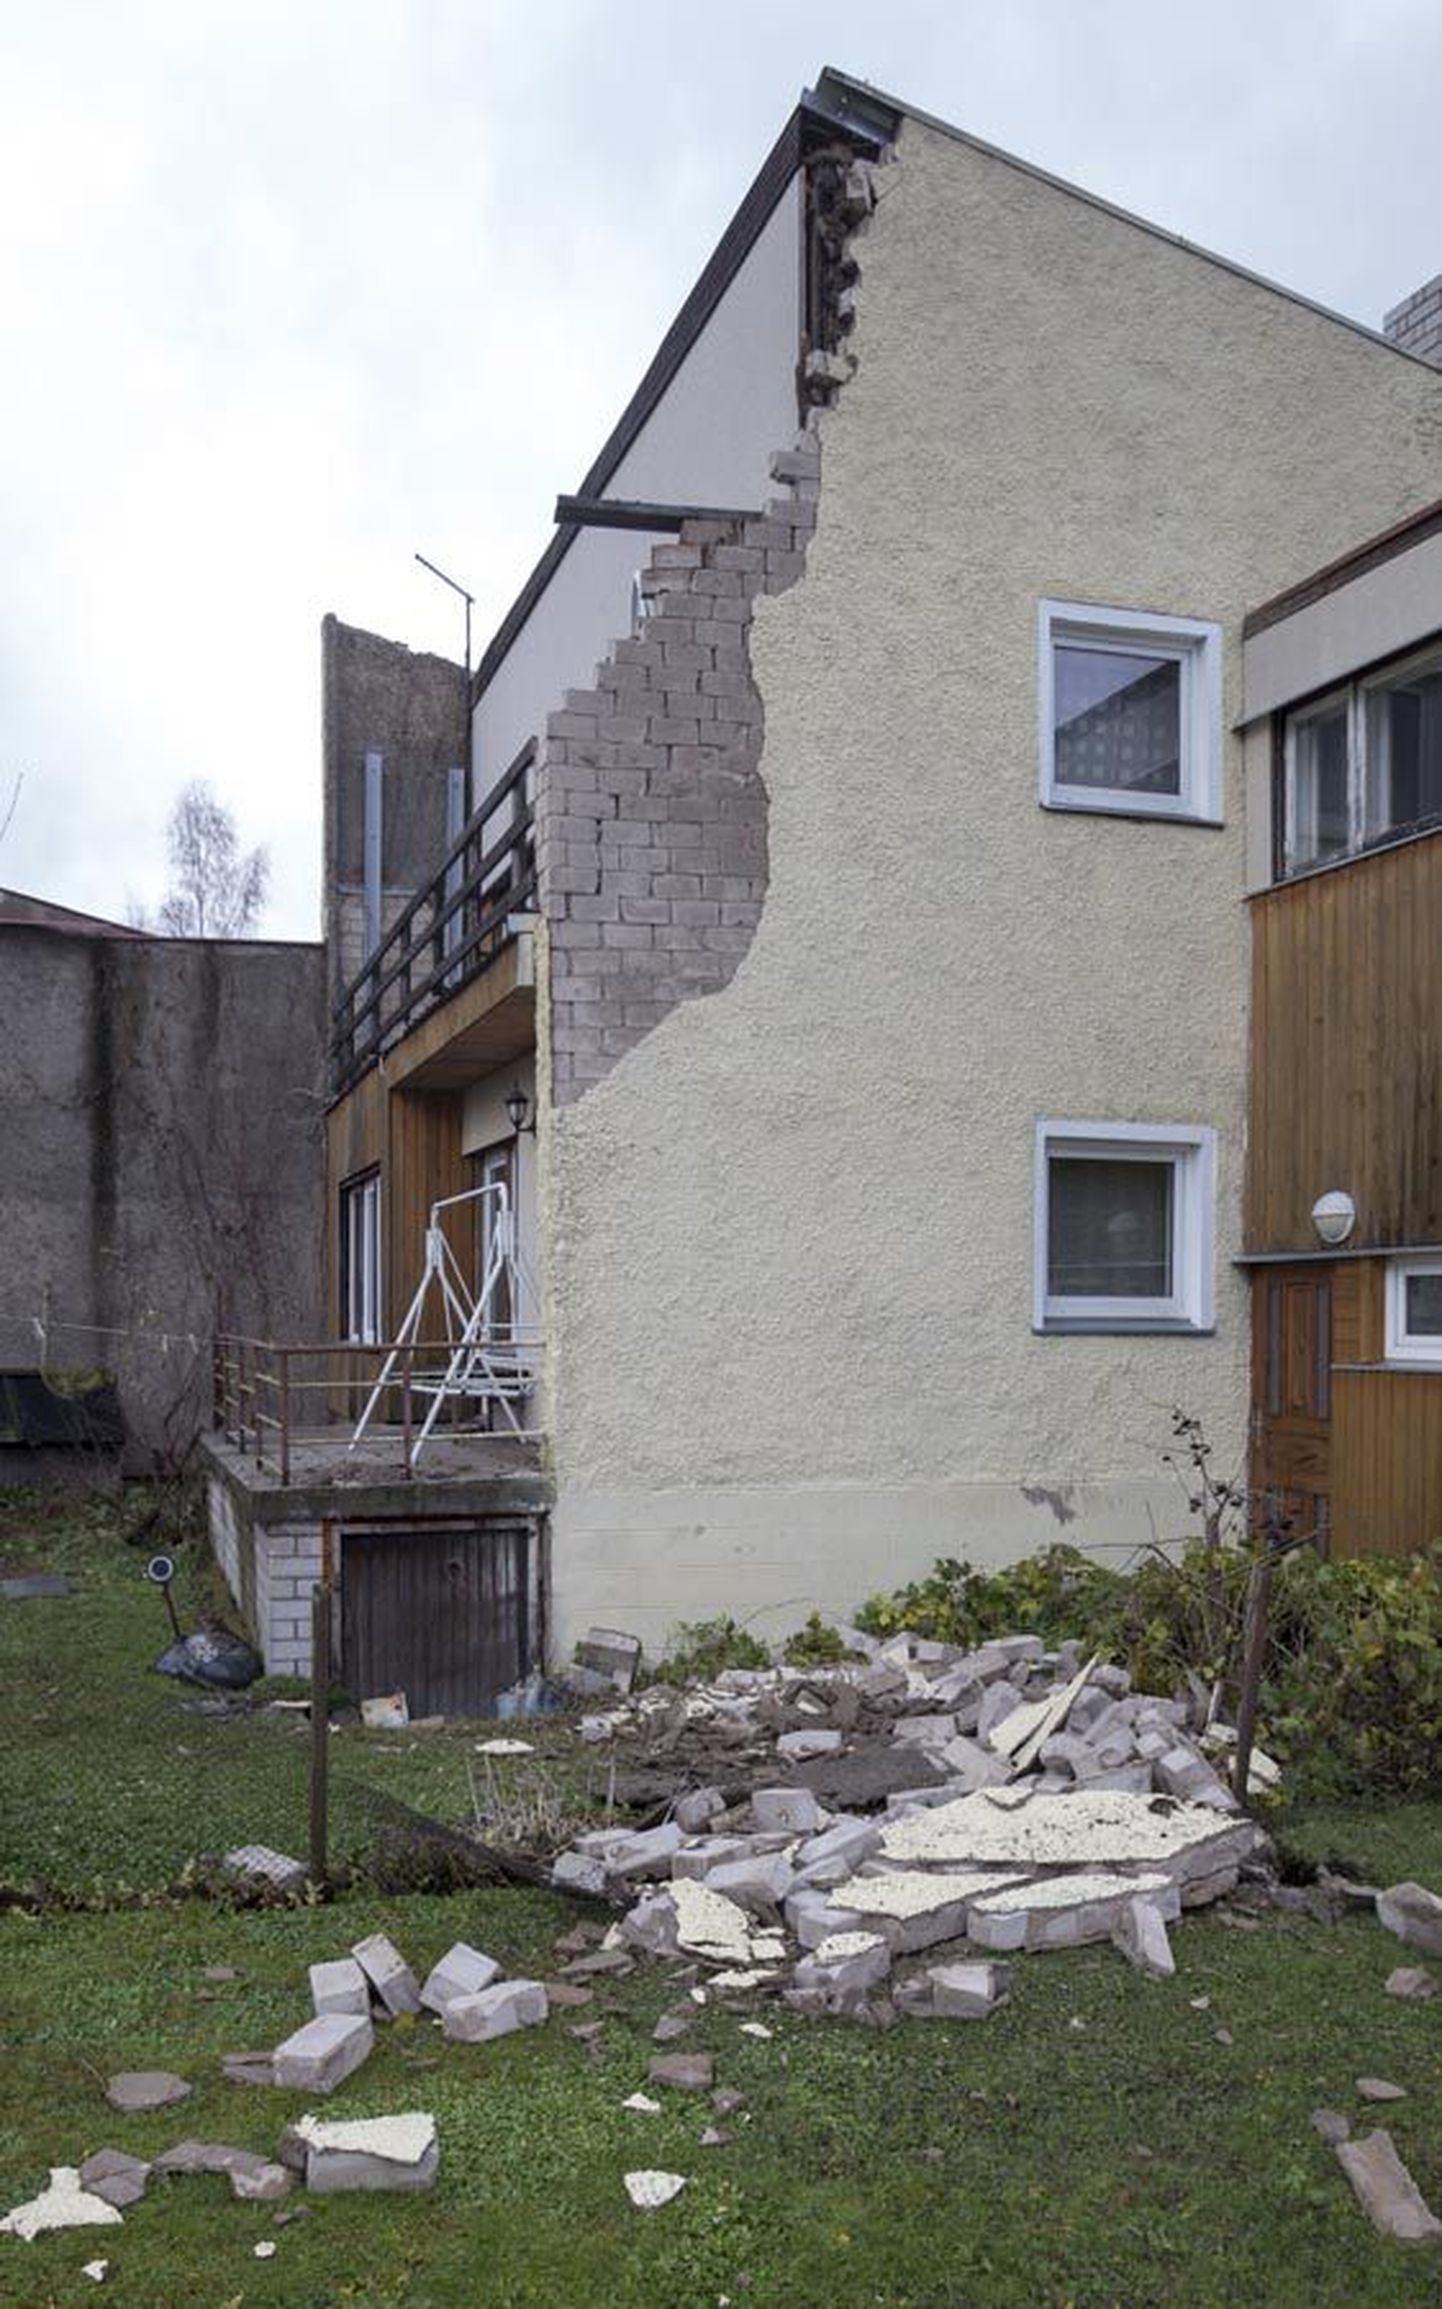 Eelmisel teisipäeval murdis torm Viljandis jupi välisseina Kase tänav 18 (pildil) ja Kase tänav 16 elumajal. Kohalik ilmajaam mõõtis sel ajal tugevaimaks tuulepuhanguks 23,7 meetrit sekundis.